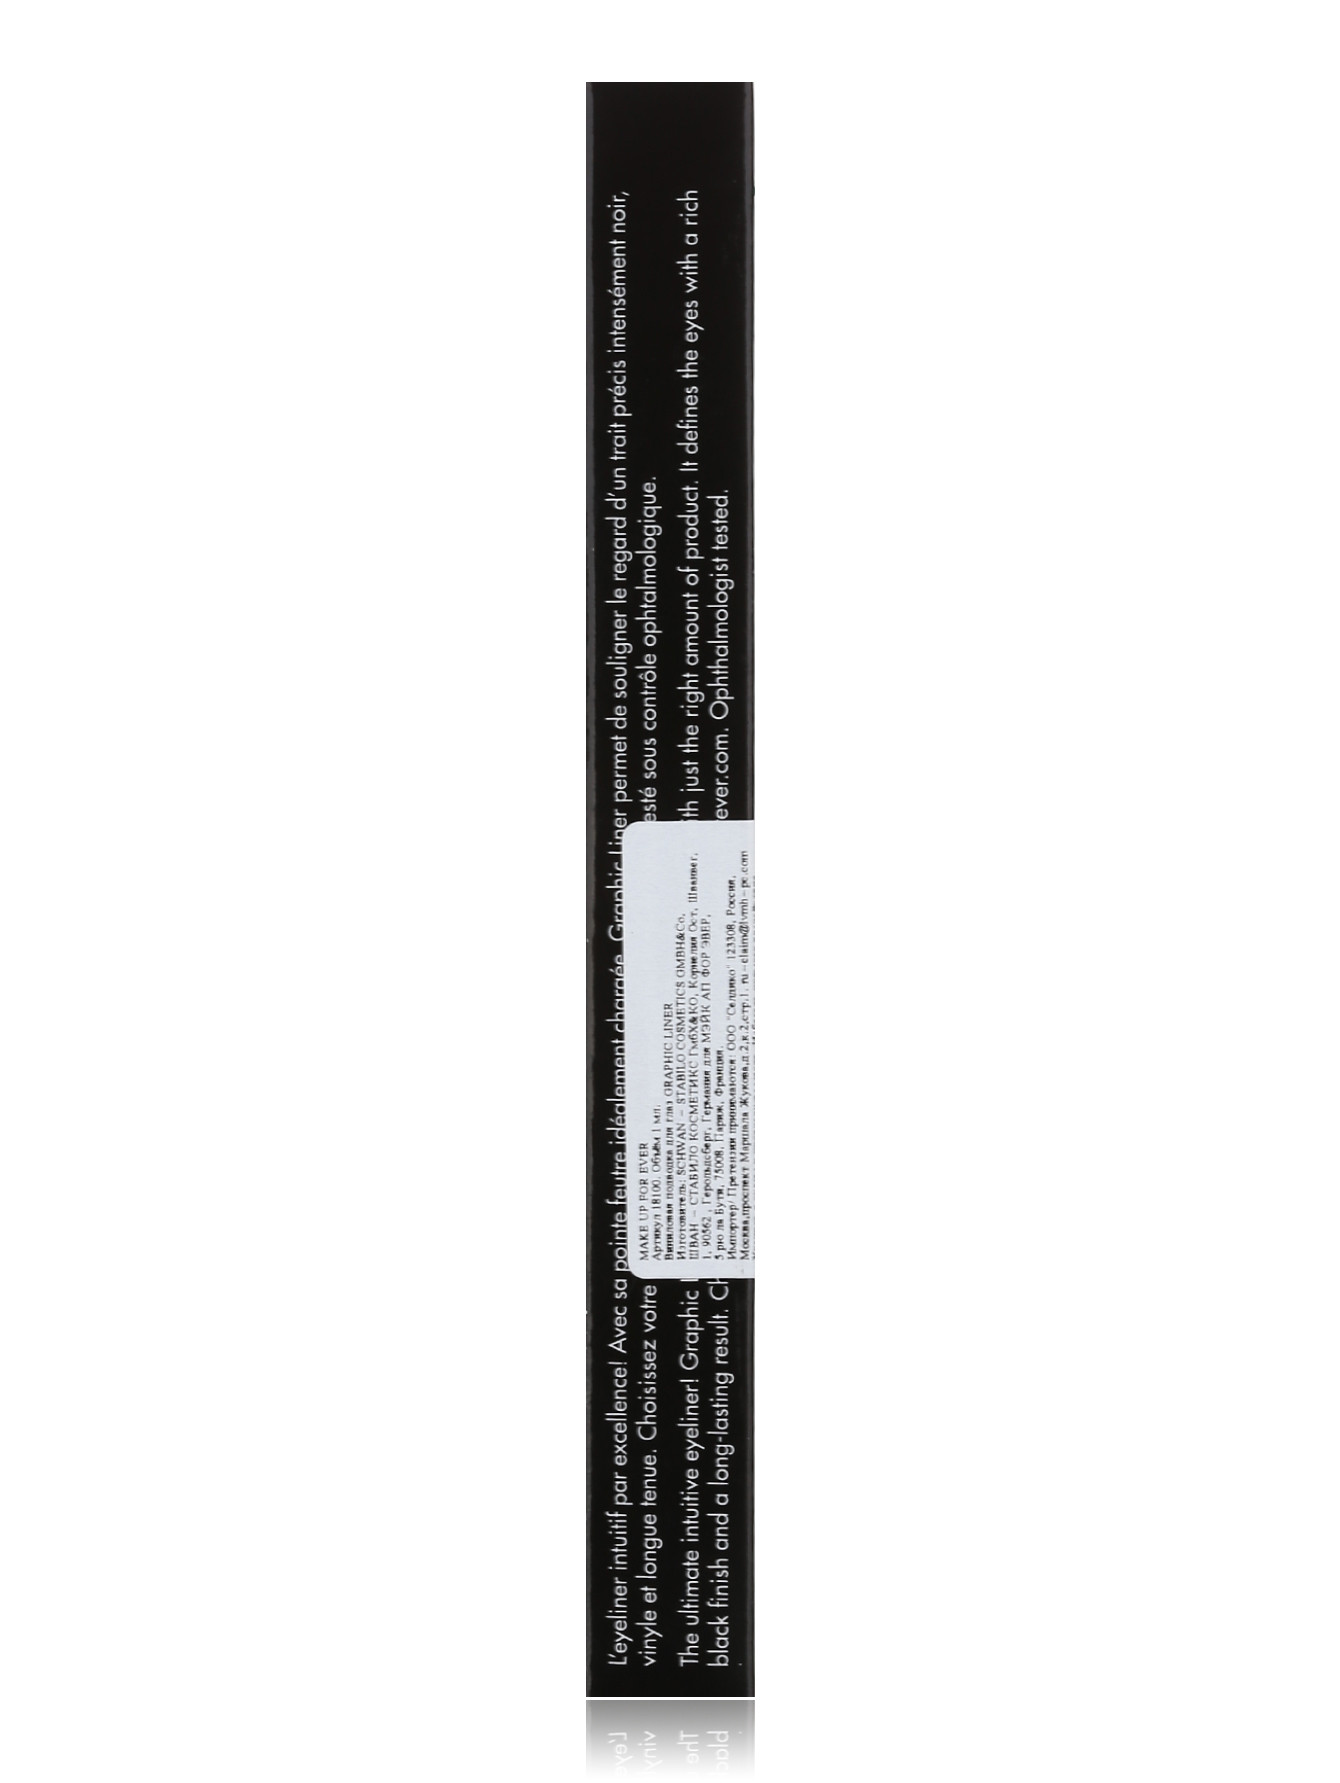  Лайнер-маркер - черный винил, Graphic Liner - Модель Верх-Низ